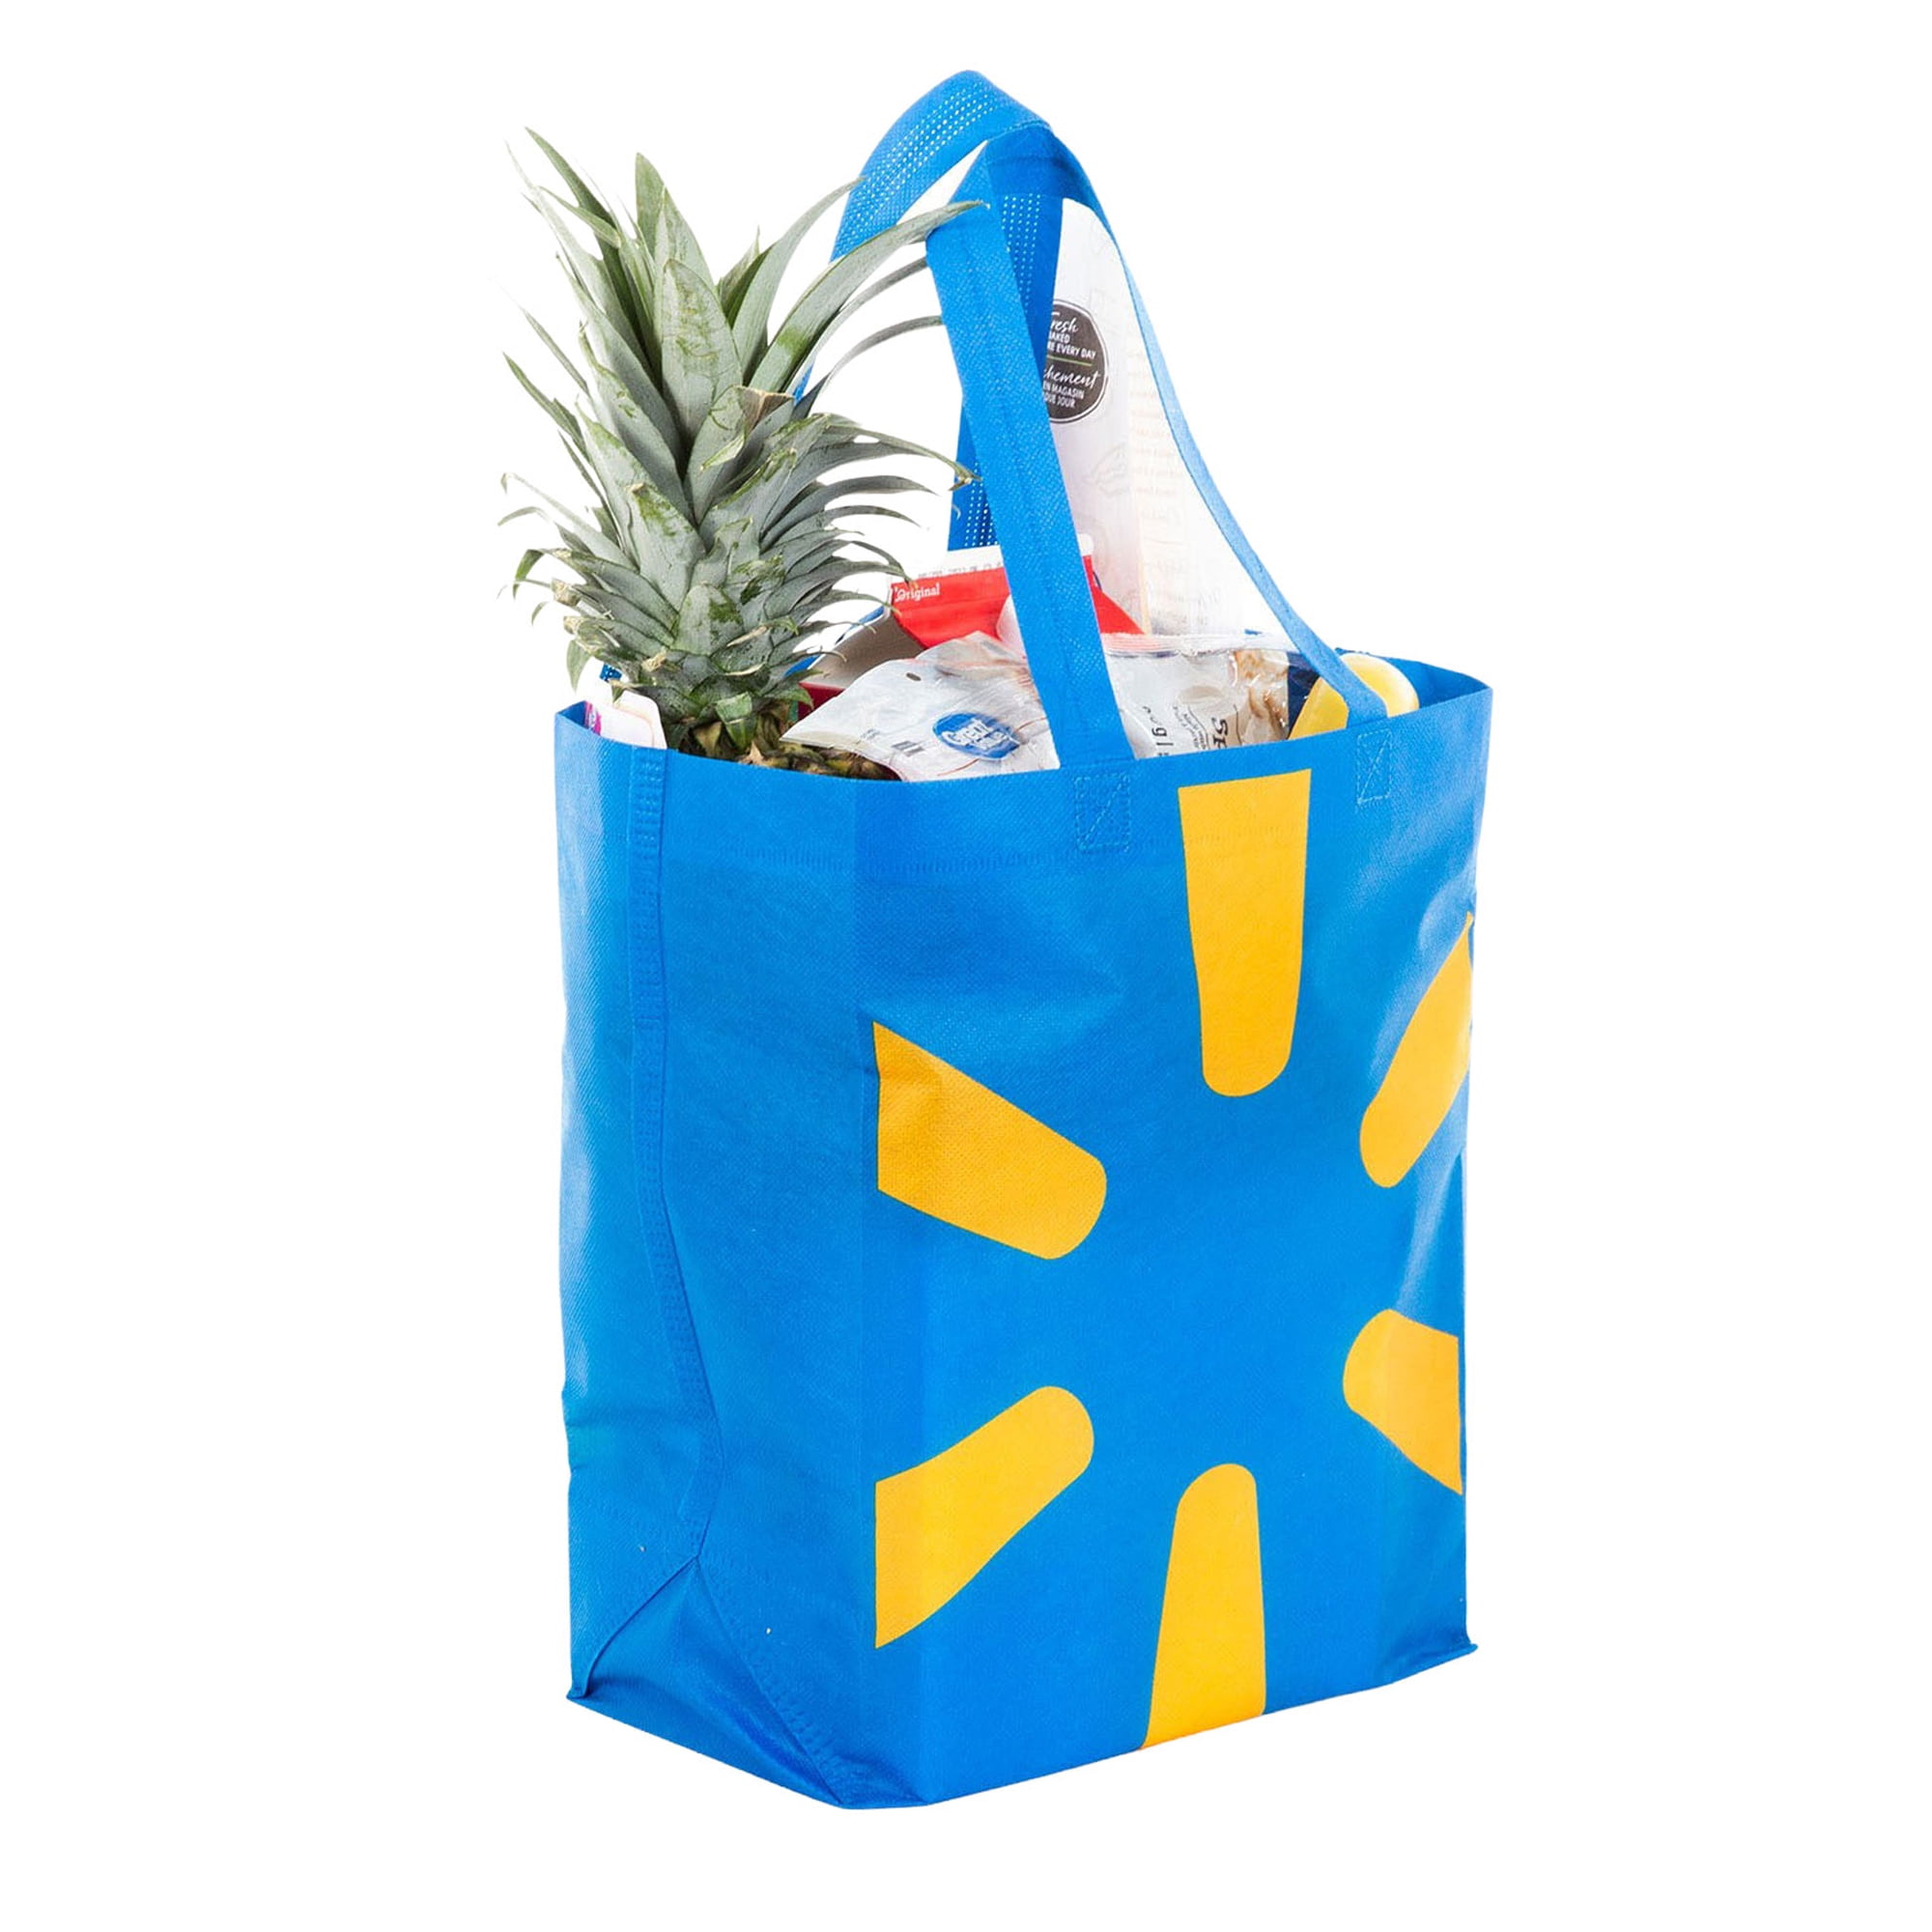 Custom Printed Bags | Paper, Plastic & Reusable Bags